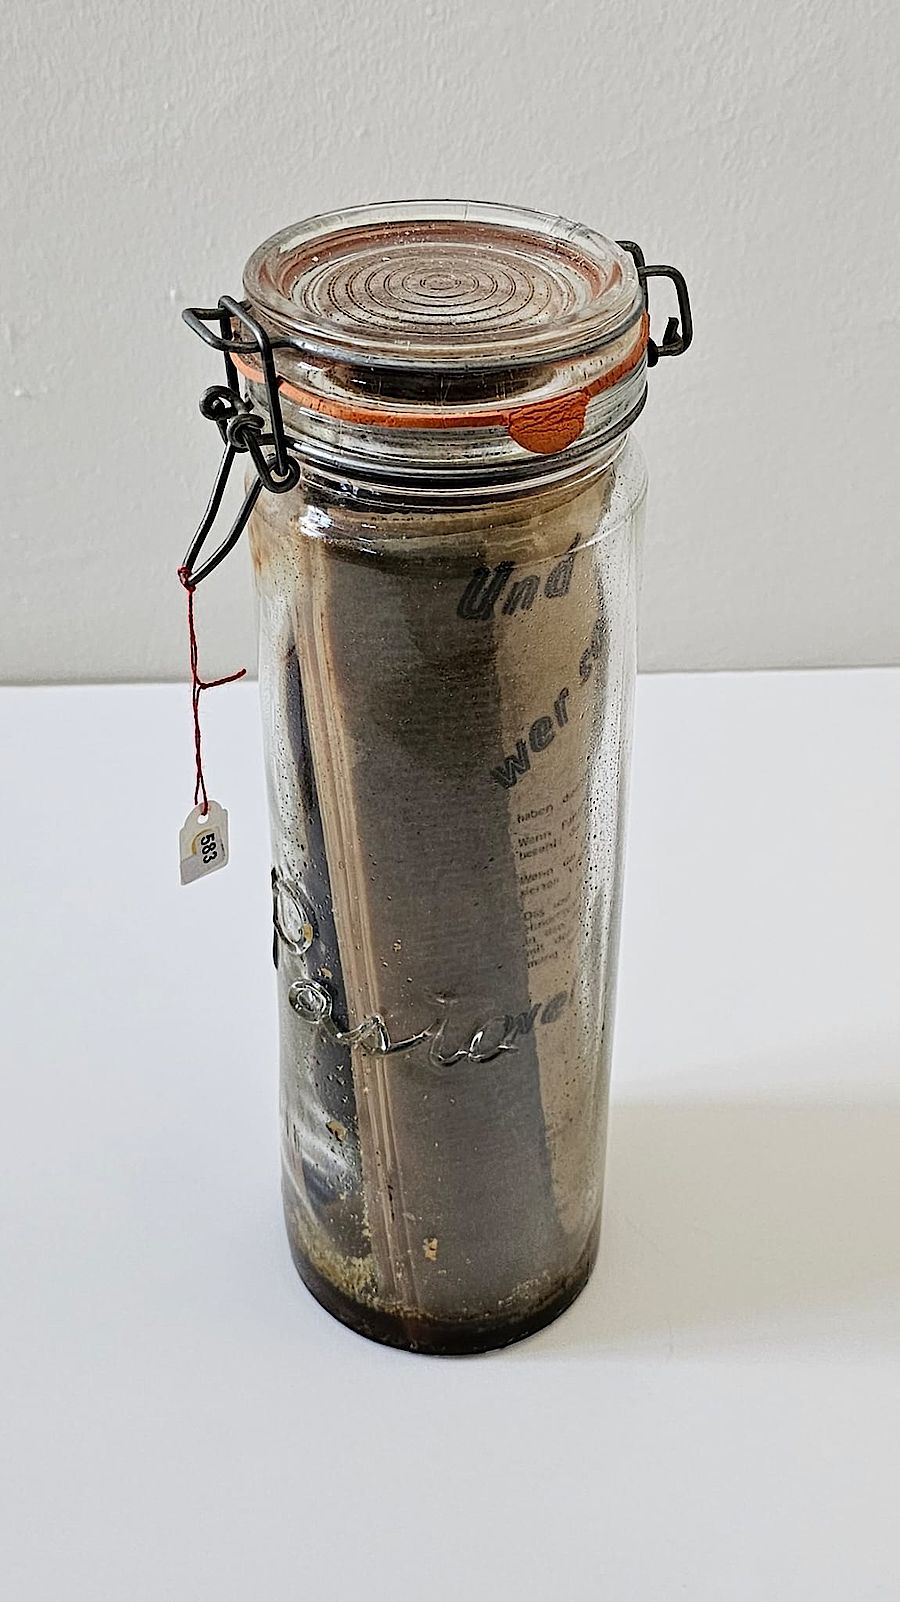 Korff Stiftung - Joseph Beuys - Objekte - Geruchsplastik